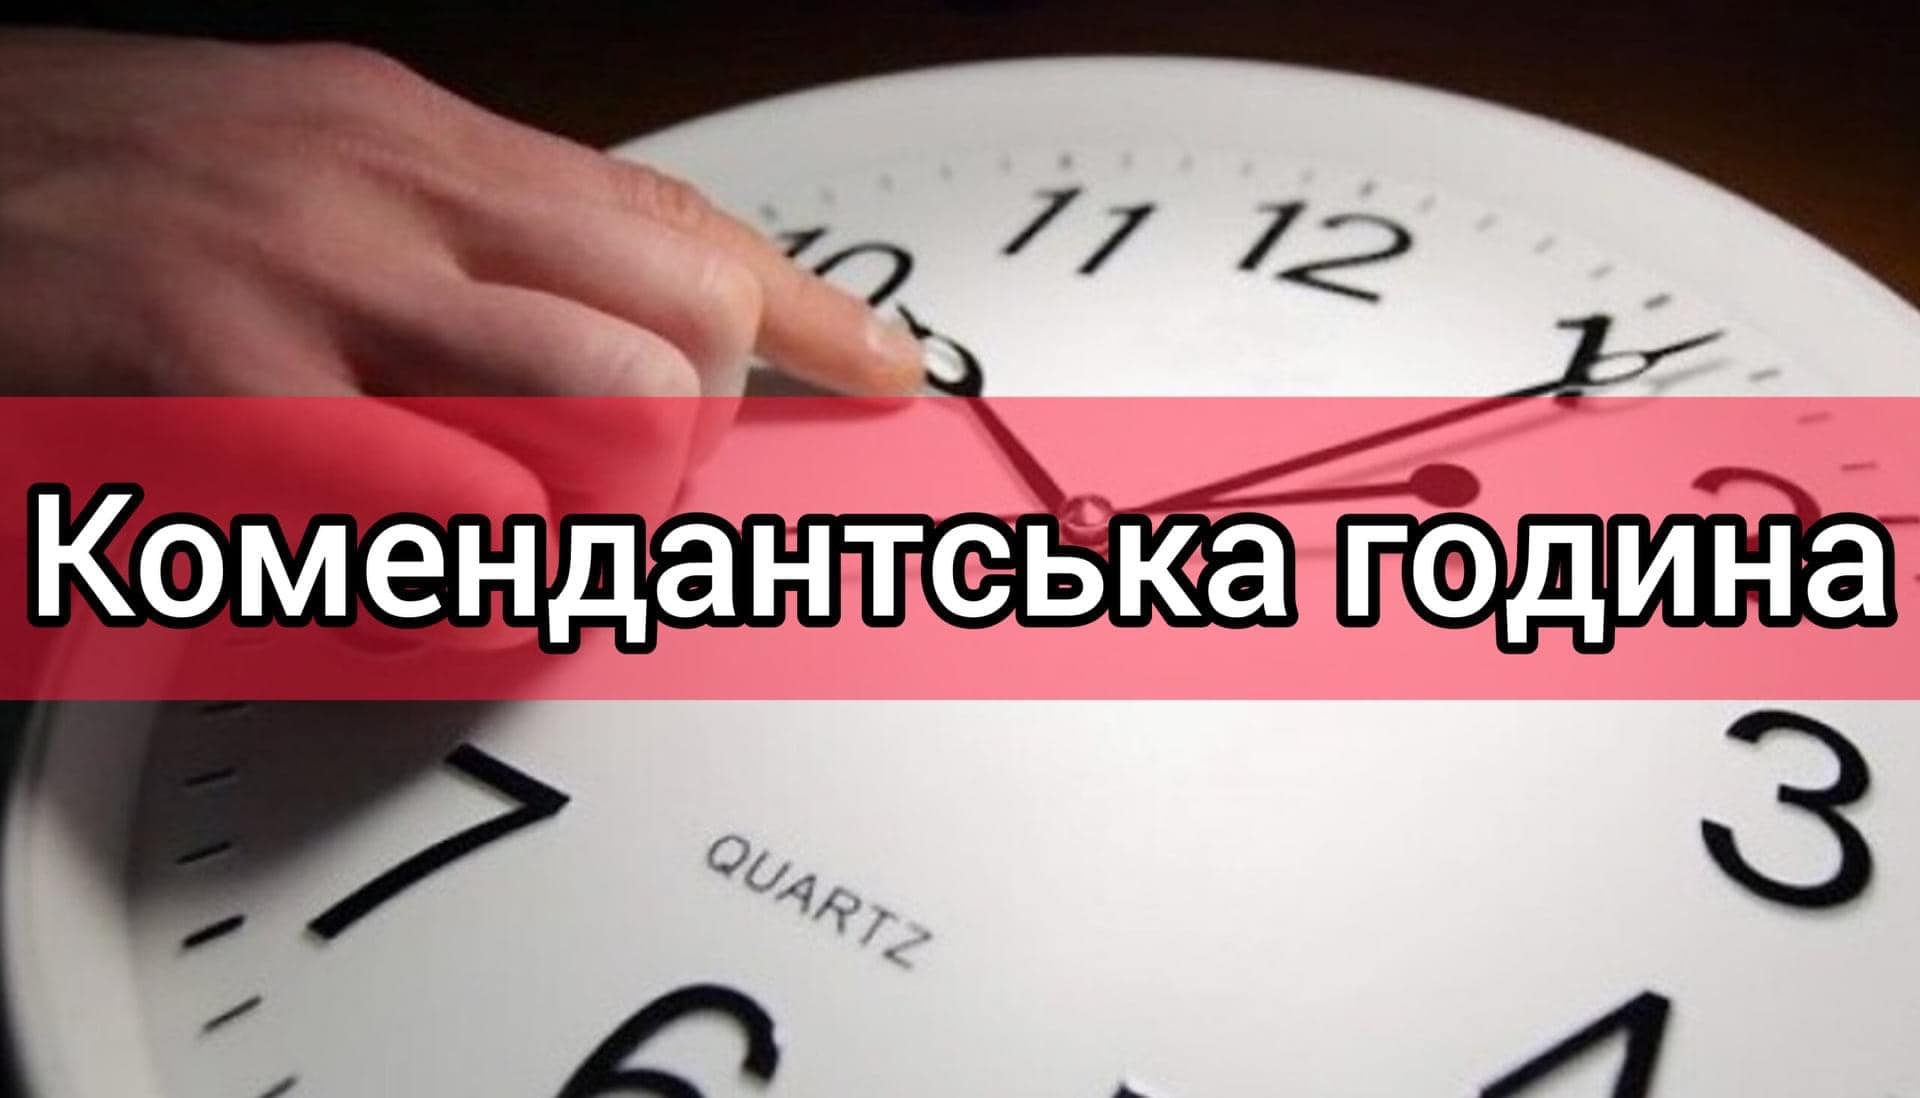 З 1 грудня комендантська година на Миколаївщині, окрім декількох громад, буде з 00:00 до 05:00 (ДОКУМЕНТ) 8